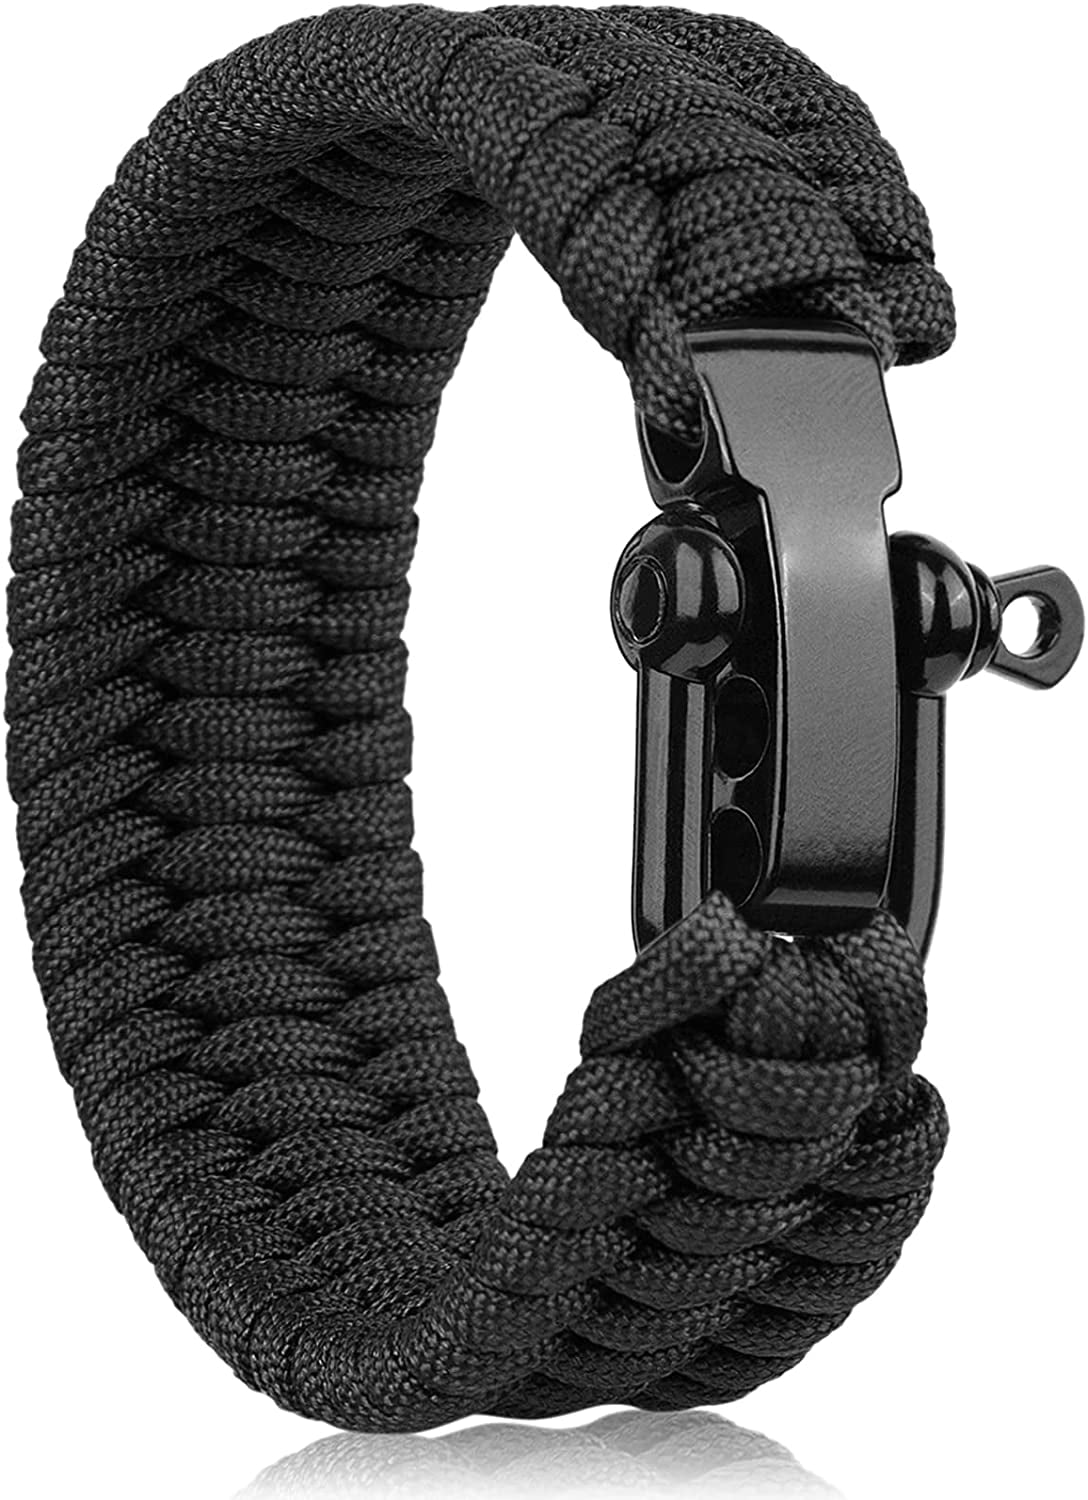 550 Paracord Bracelet Kit - Double Stitch - Large choice of colour combos